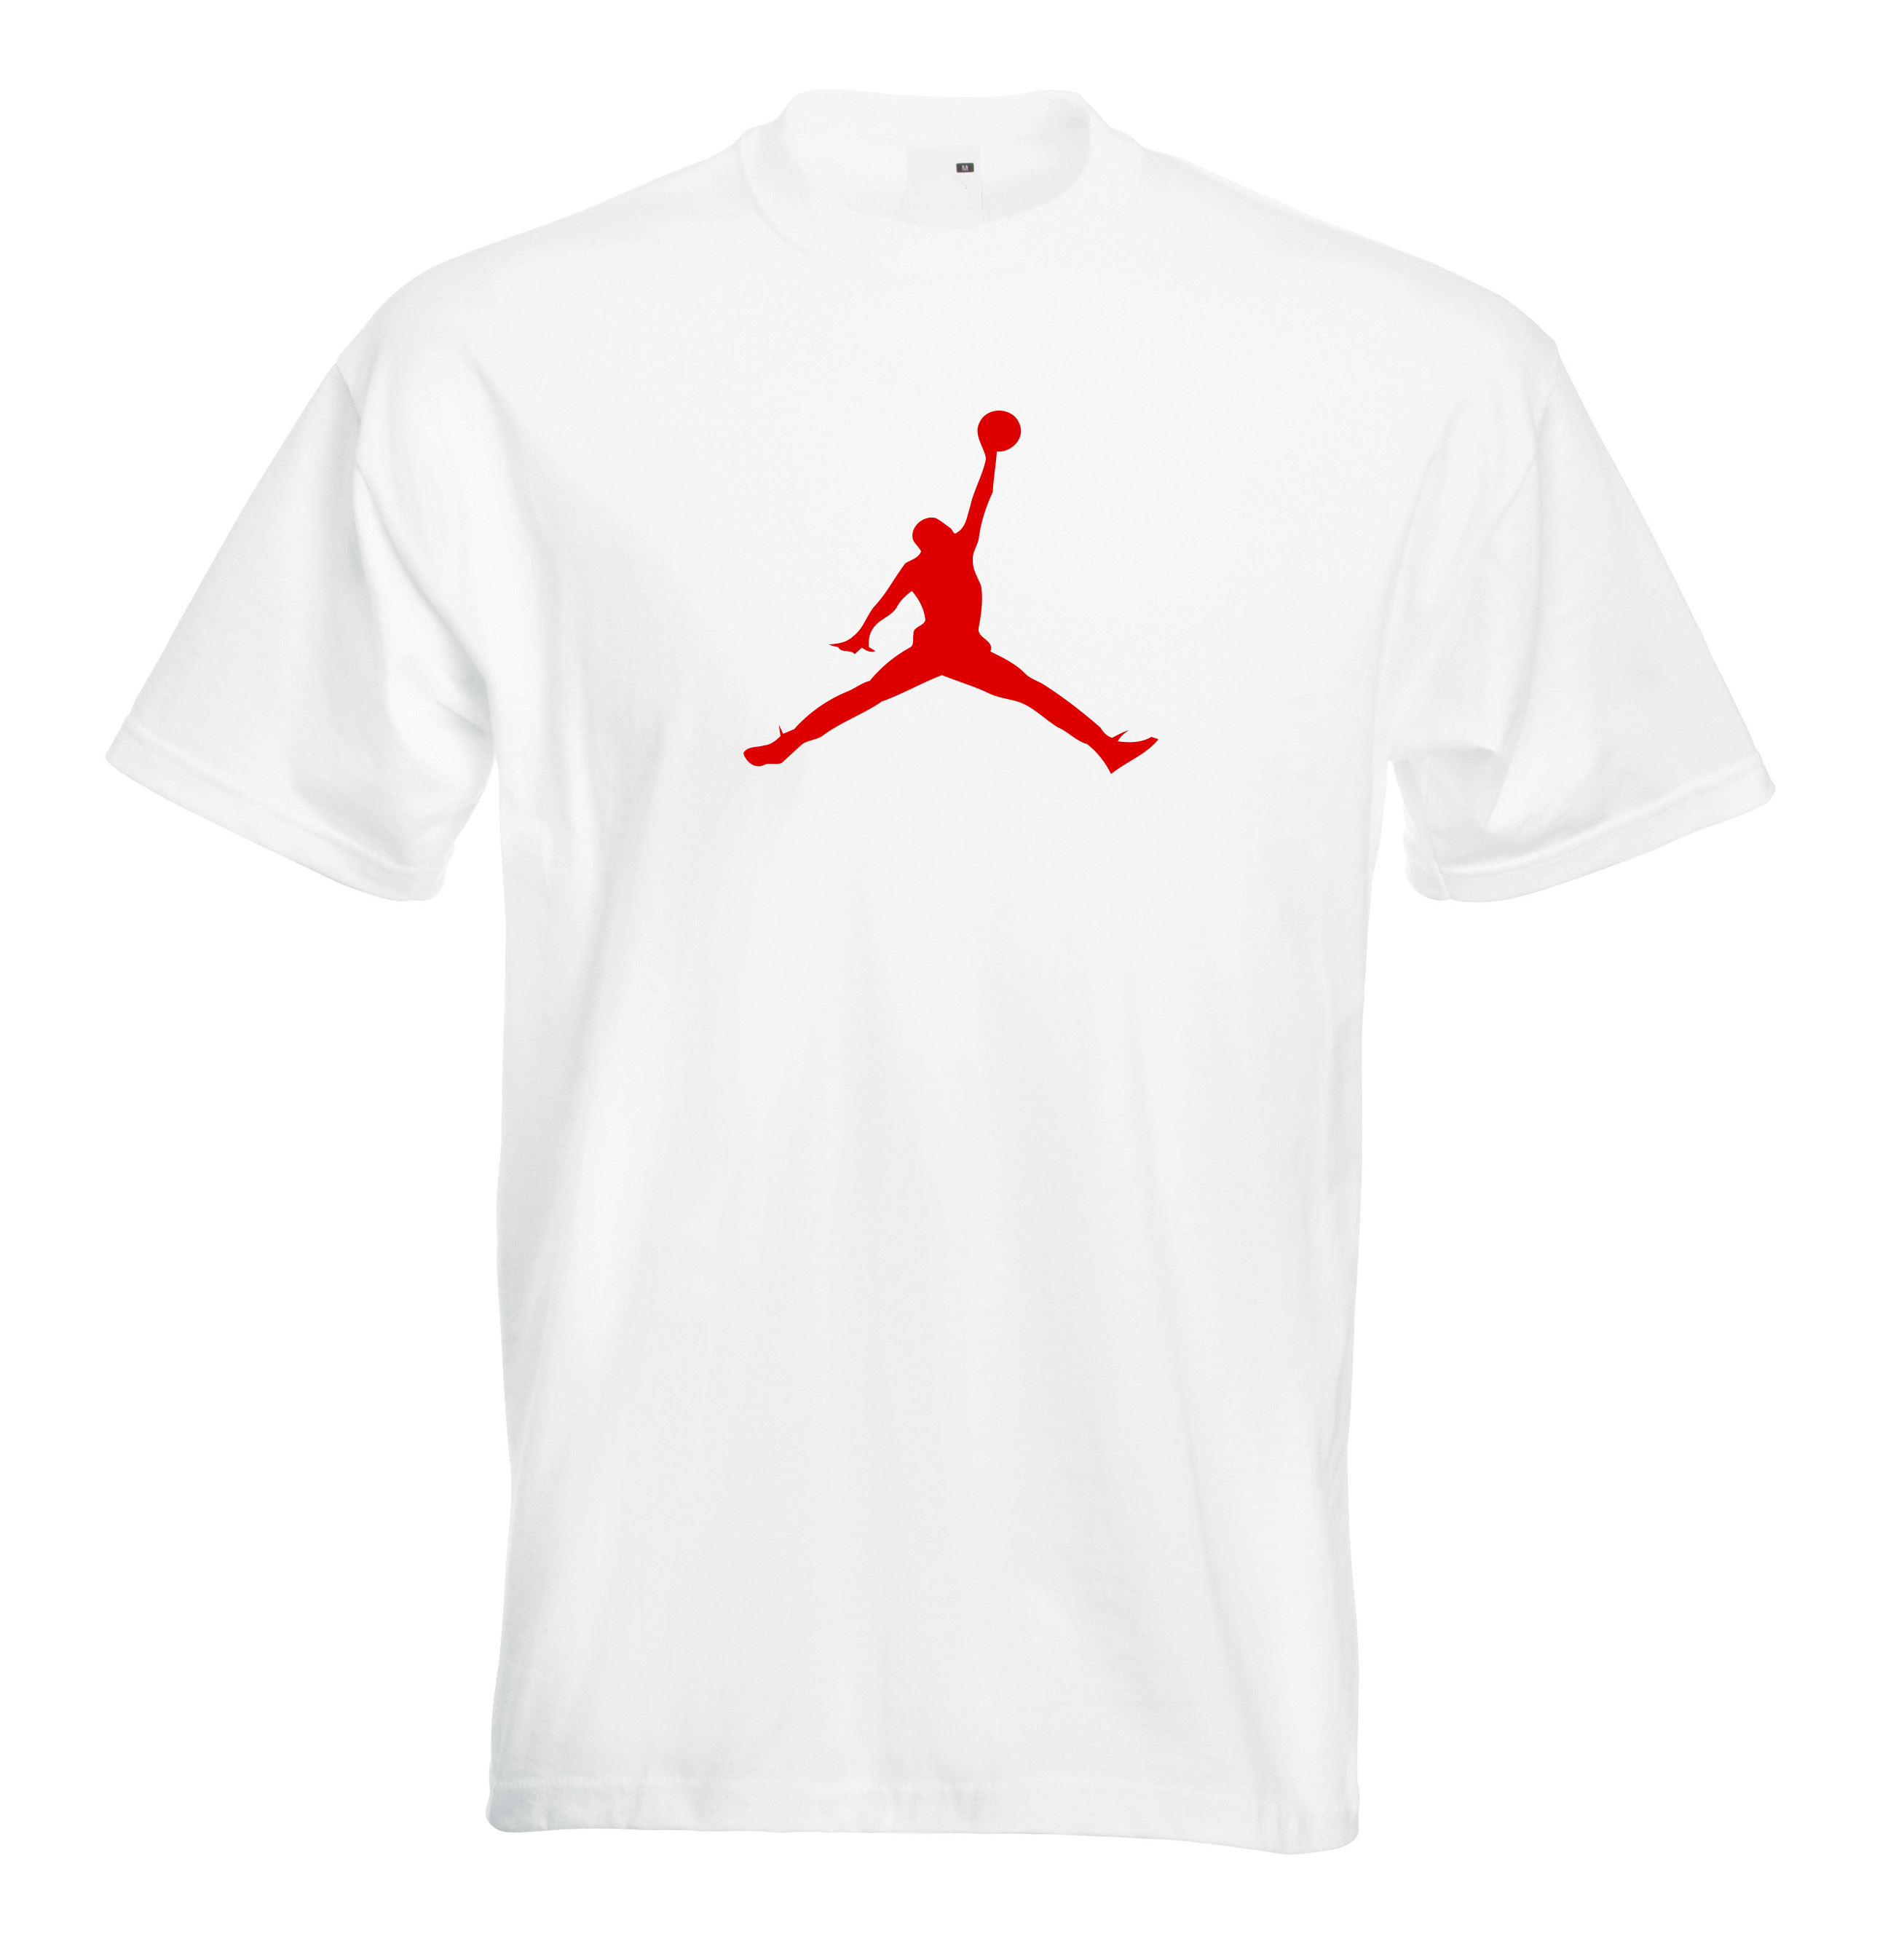 jordan shirts ebay